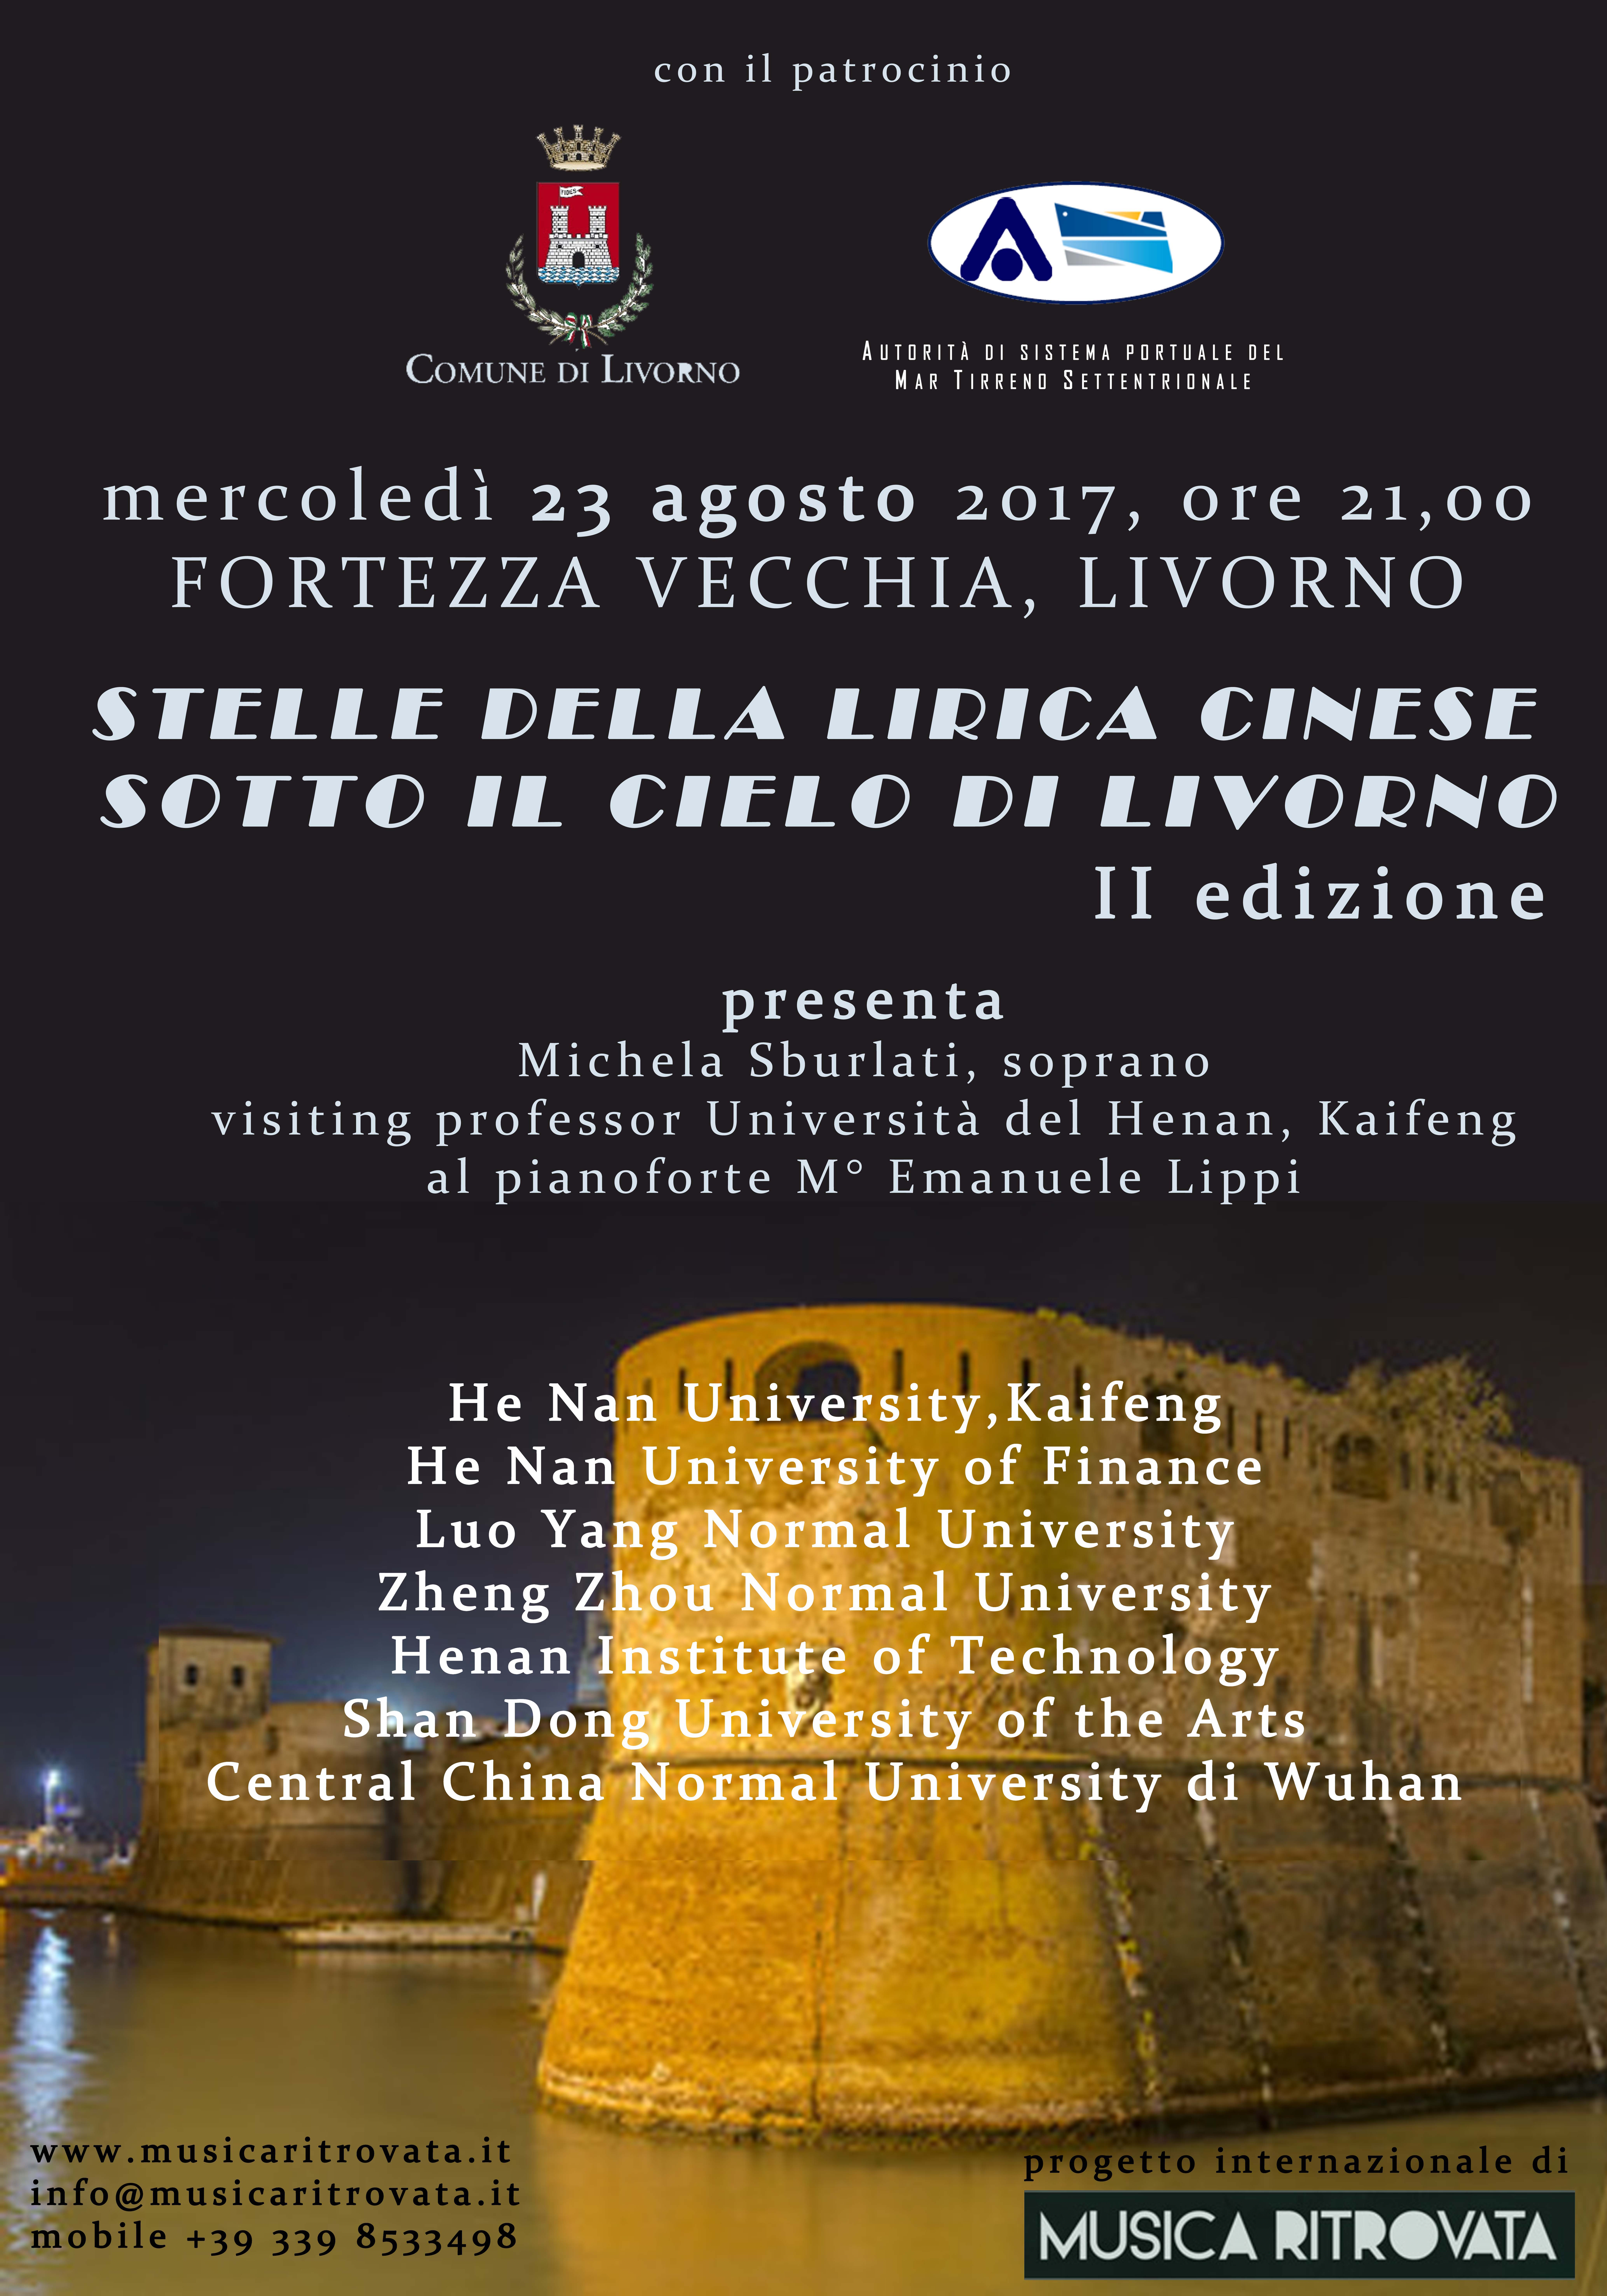 STELLE DELLA LIRICA CINESE SOTTO IL CIELO DI LIVORNO - II edizione @ Fortezza Vecchia | Livorno | Toscana | Italia